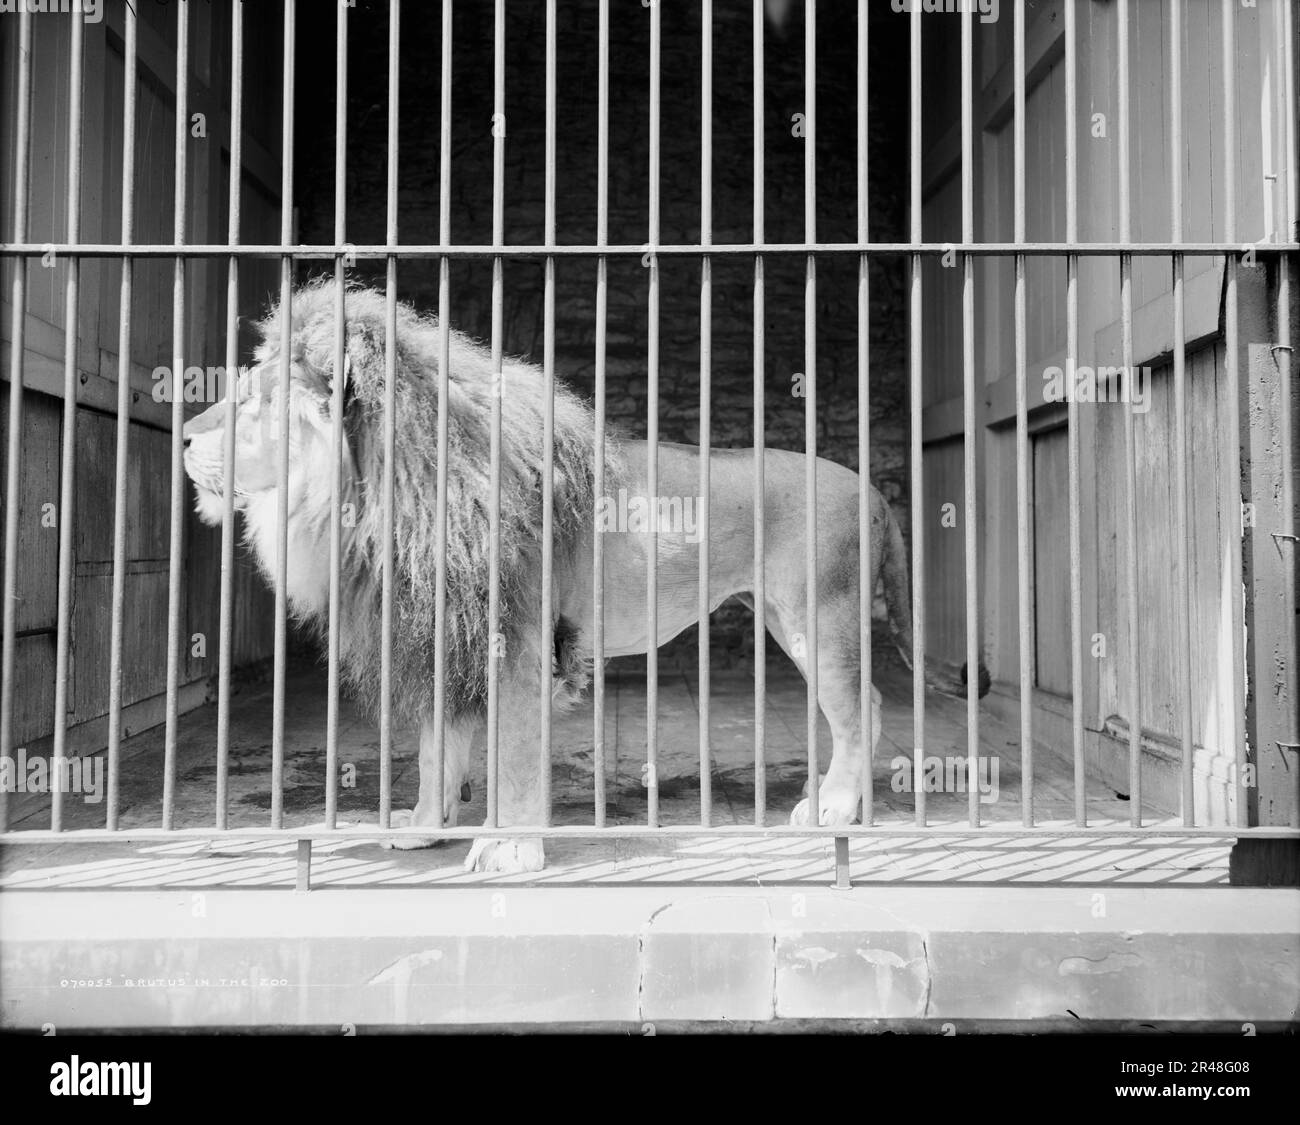 Brutus im Zoo, c1907. Wahrscheinlich Cincinnati Zoological Garden. Stockfoto